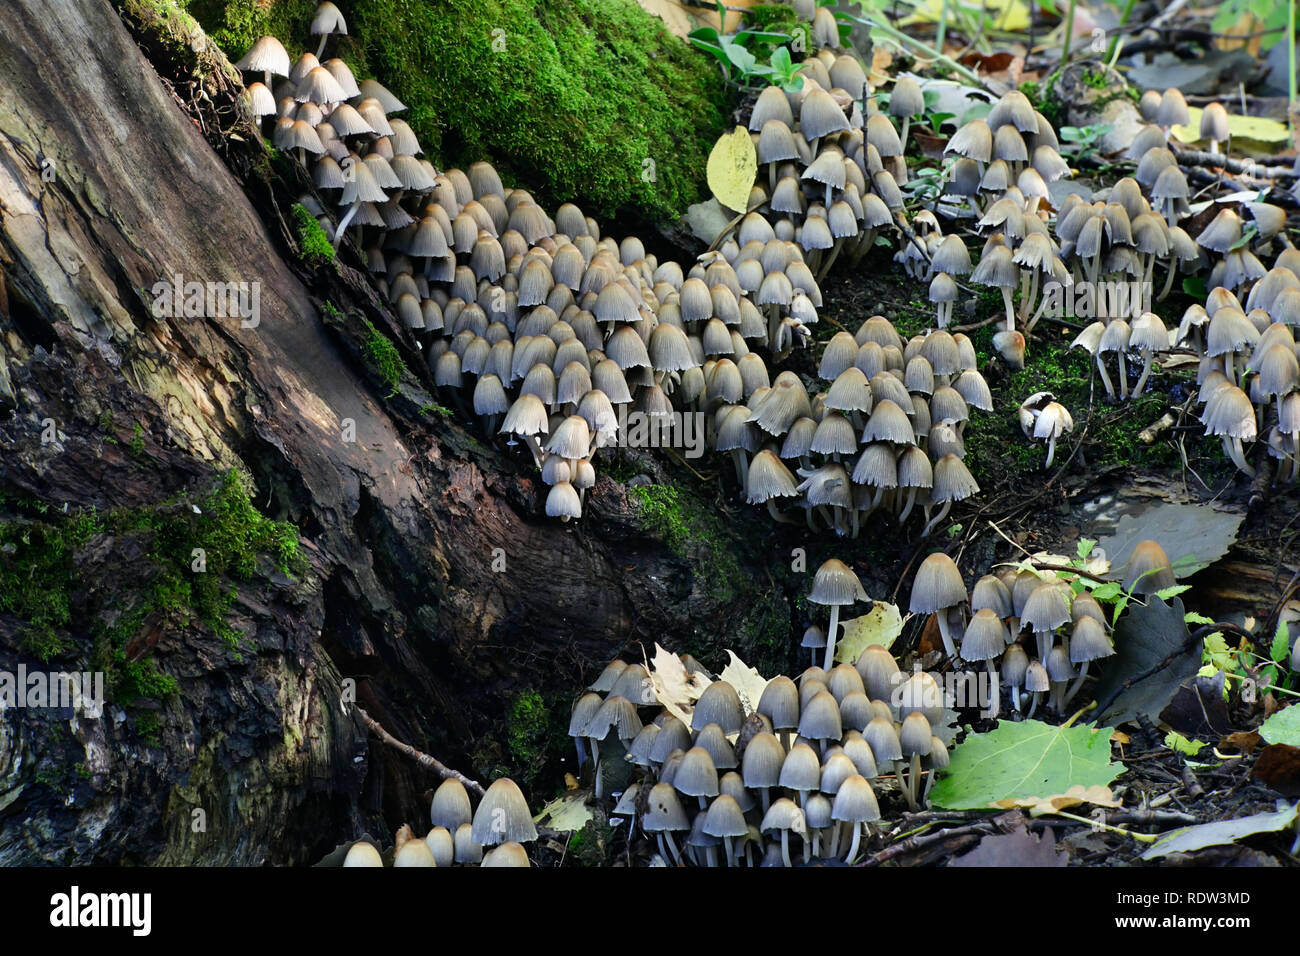 Coprinellus micaceus, Glistening Inkcap mushroom Stock Photo